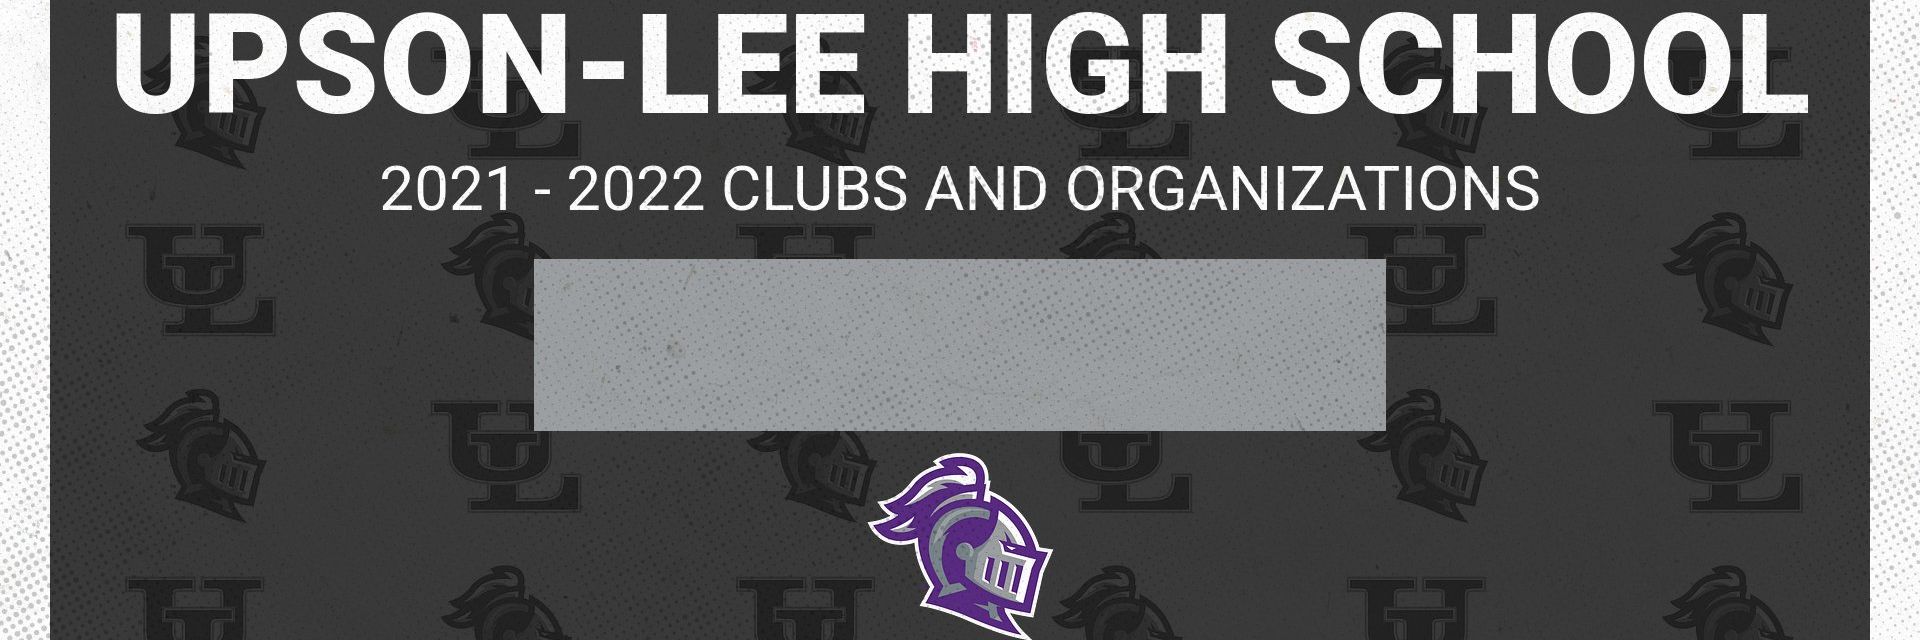 upson-lee-high-school-2021-2022-clubs-organizations-cheddar-up